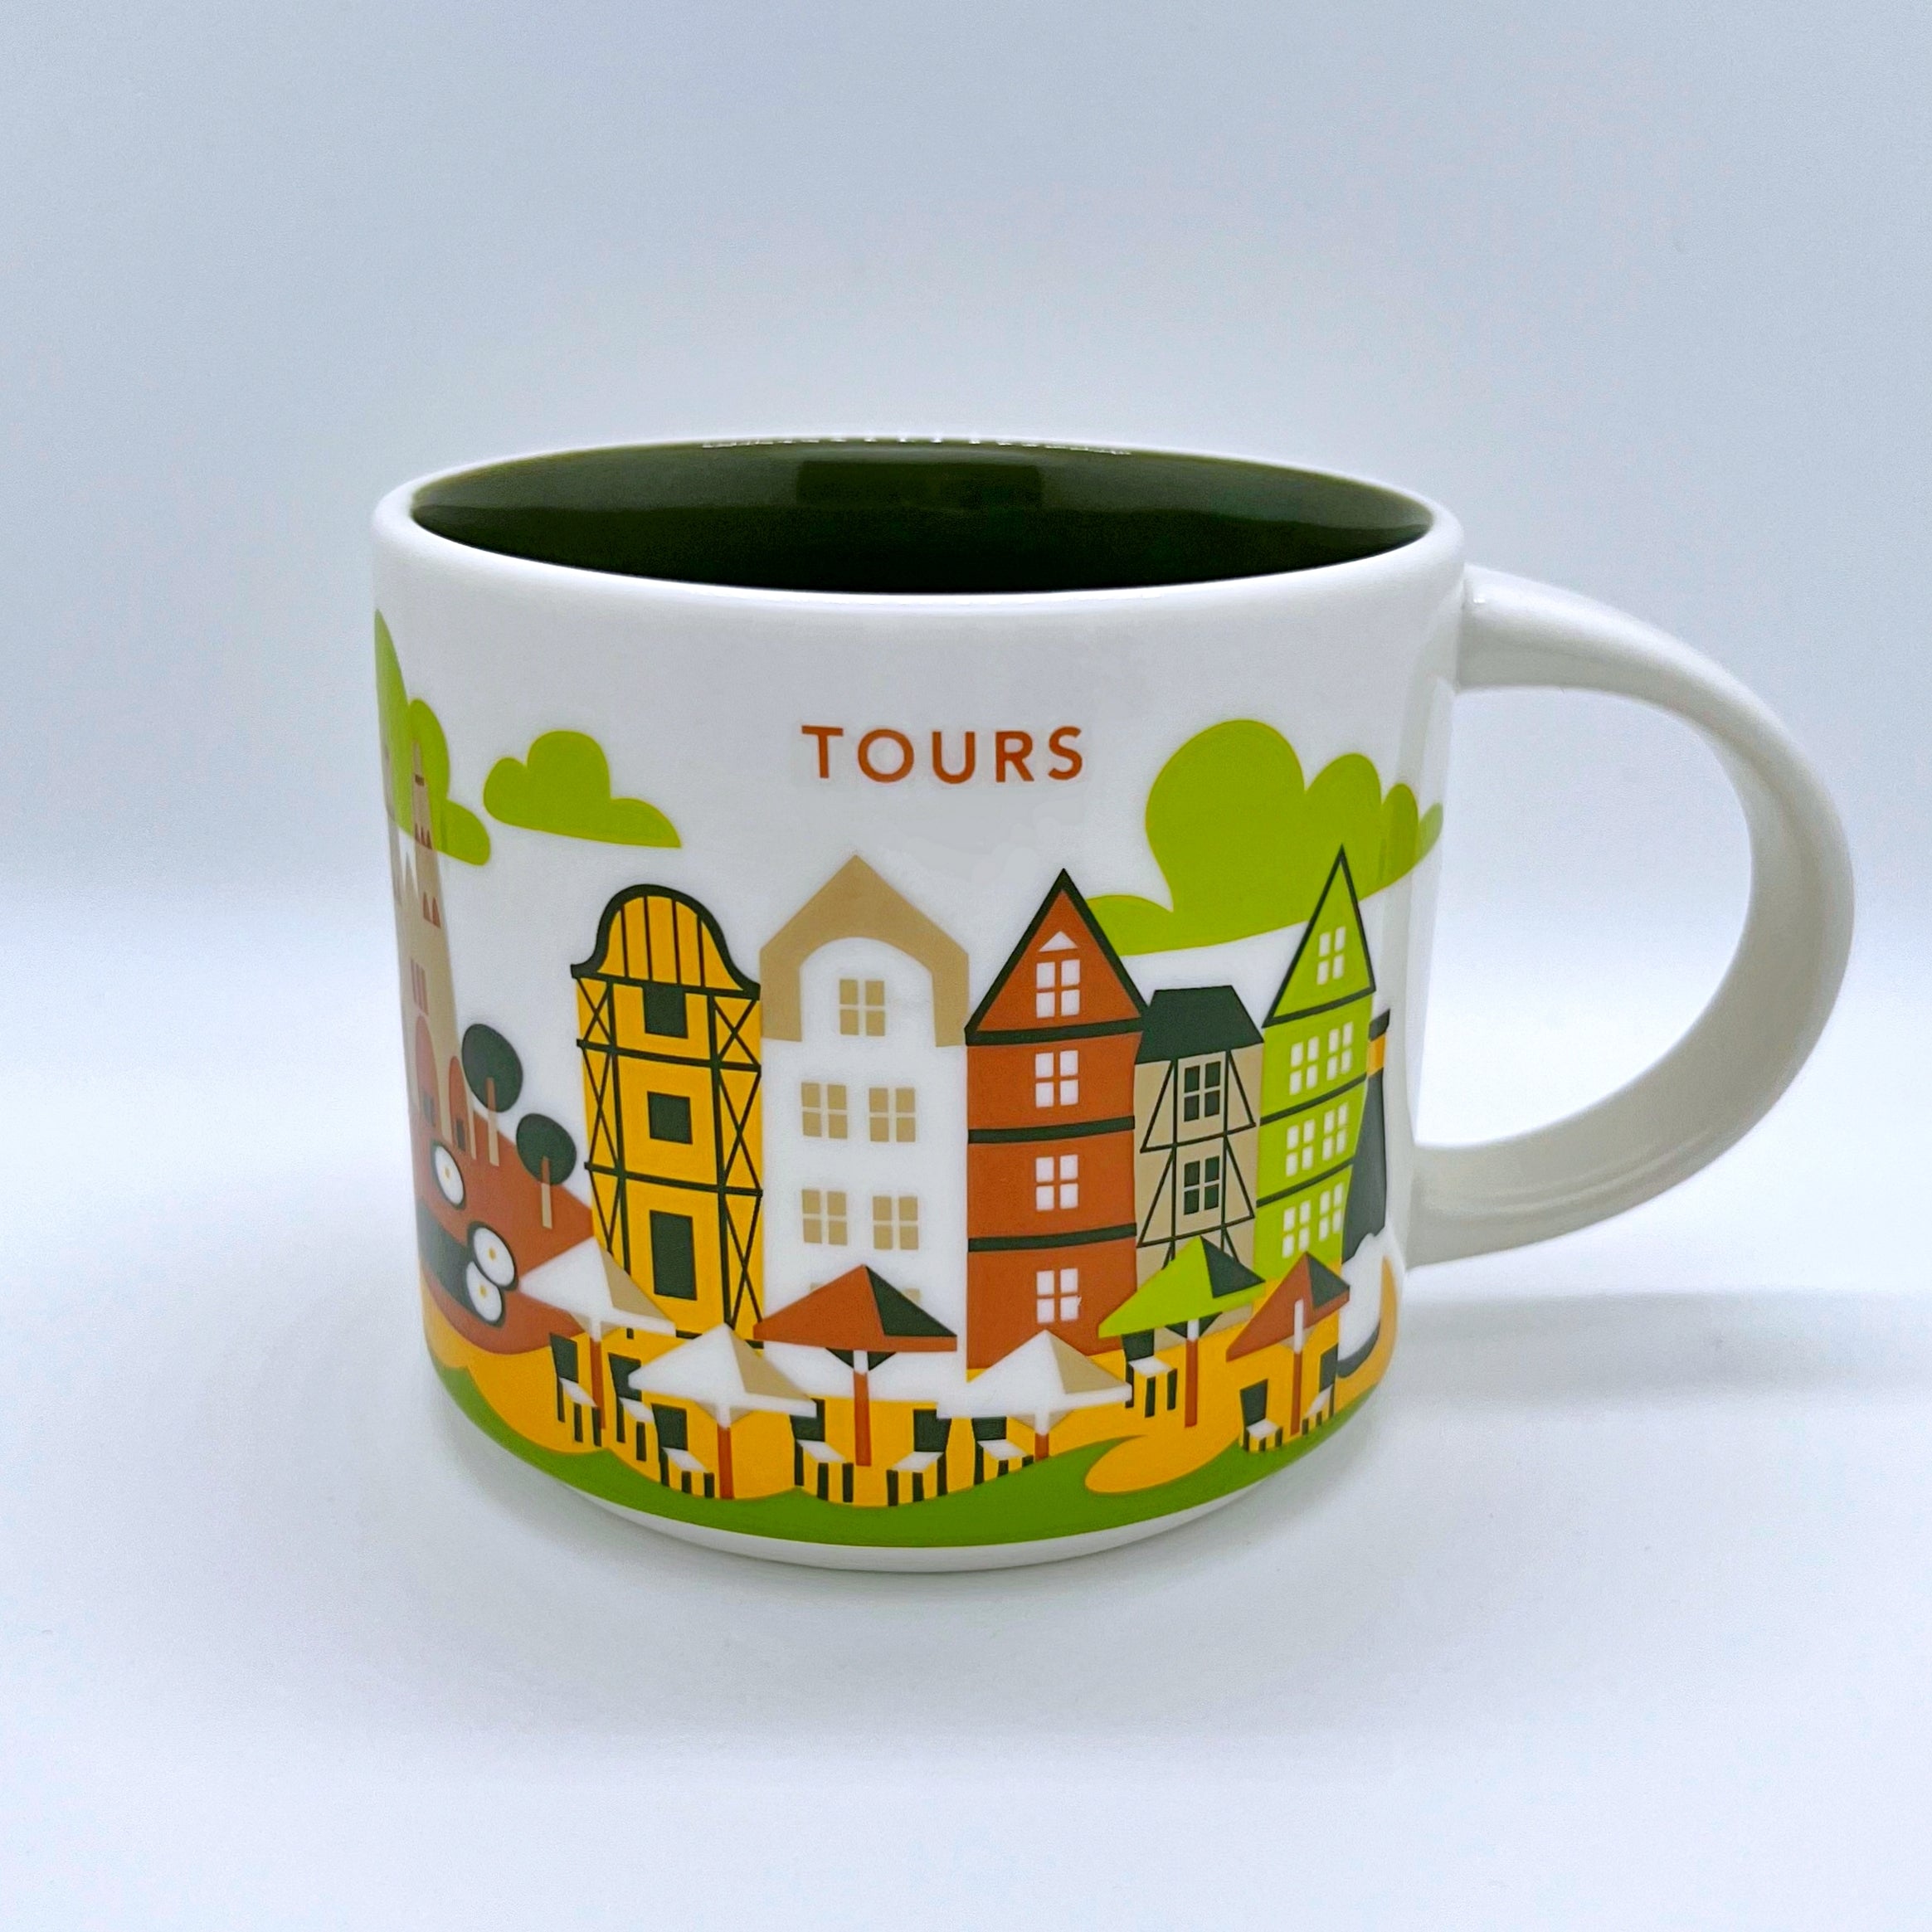 Kaffee Tee und Cappuccino Tasse von Starbucks mit gemalten Bildern aus der Stadt Tours